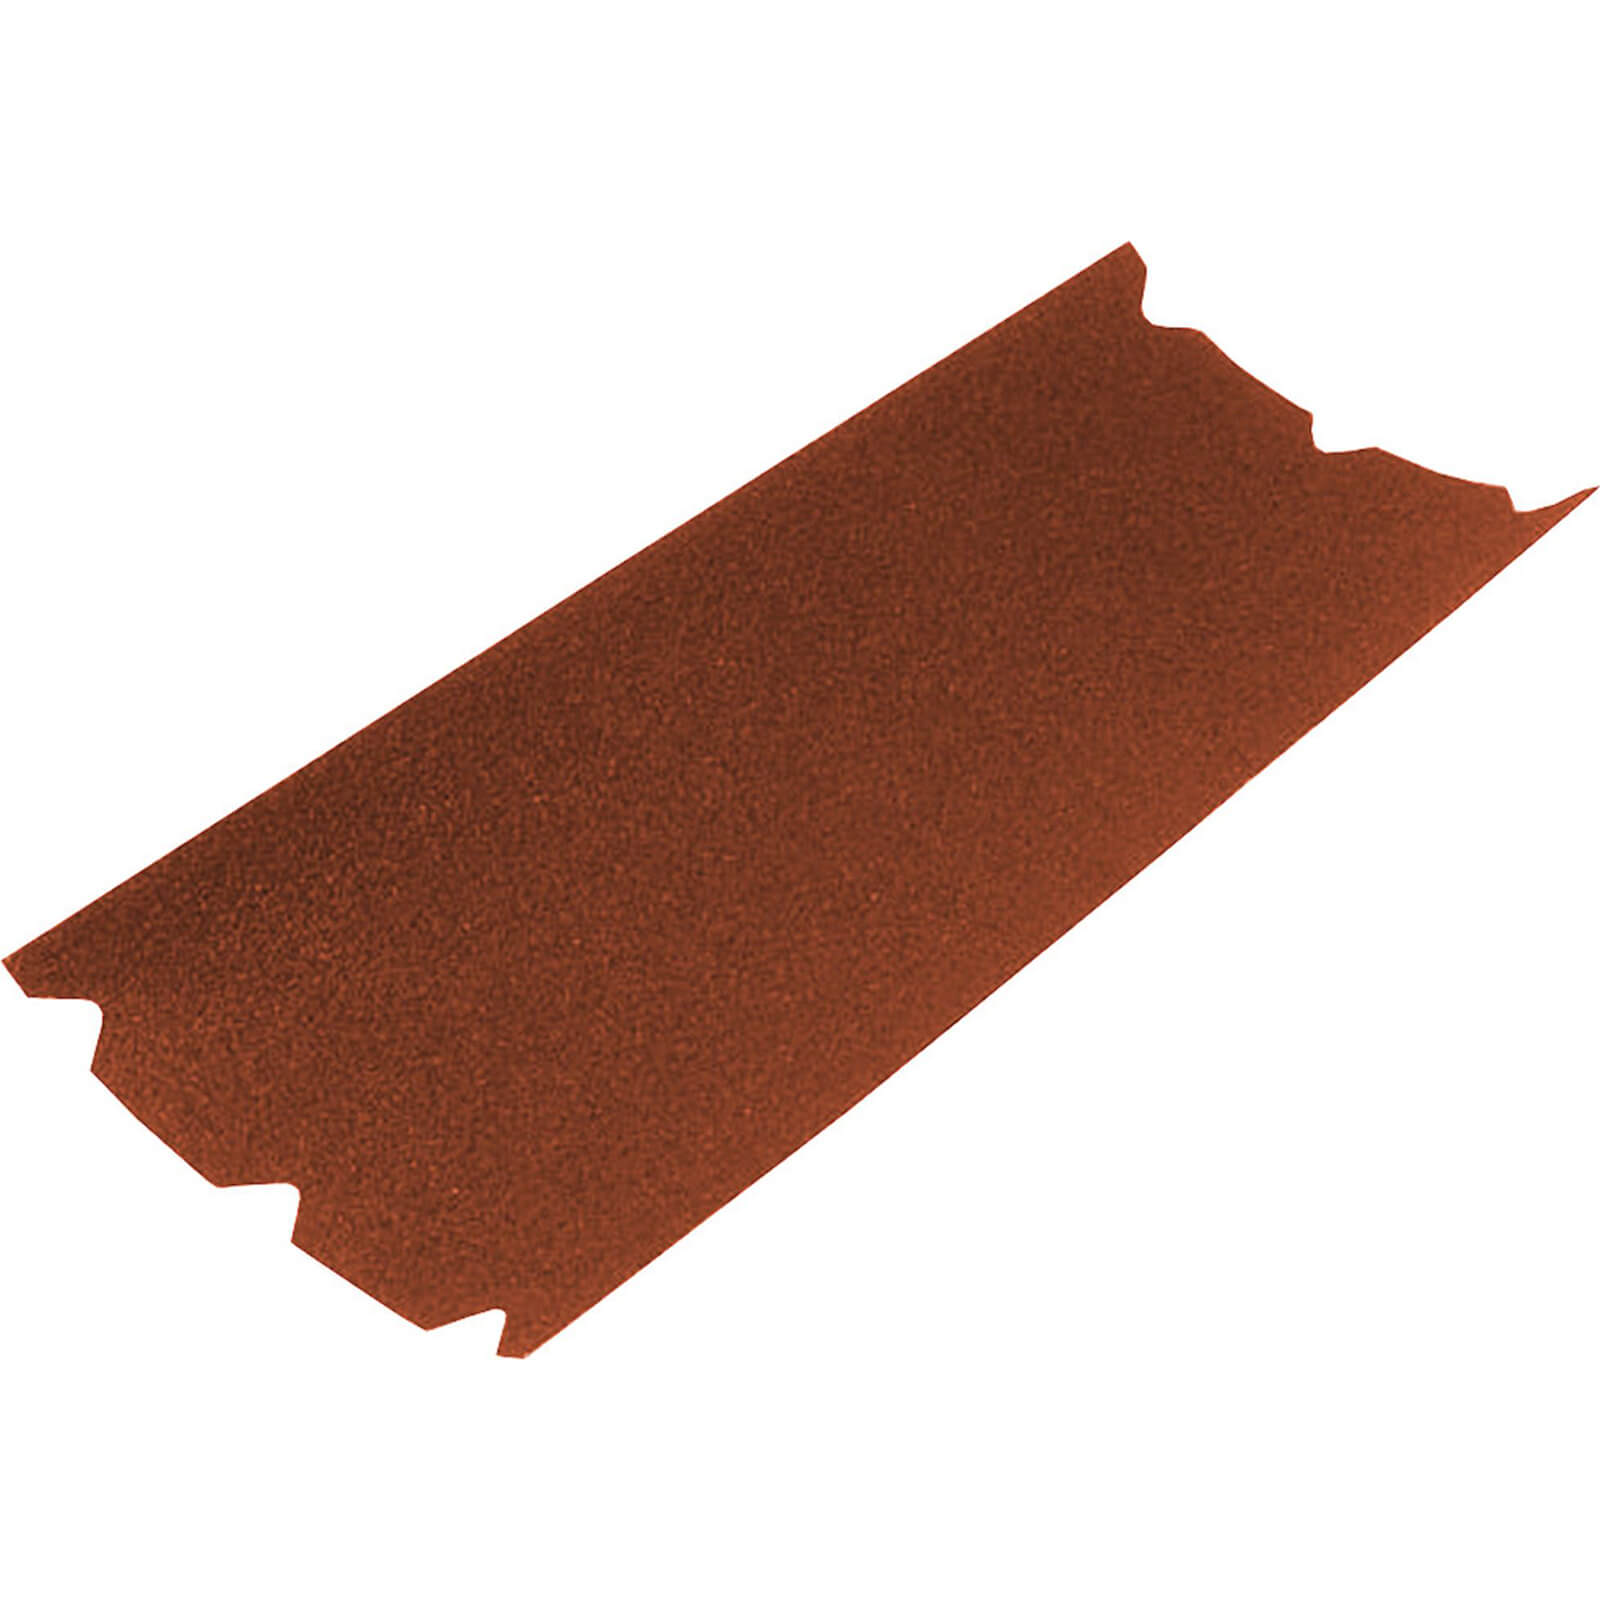 Image of Faithfull Floor Sanding Sheets 203mm x 475mm 60g Pack of 1